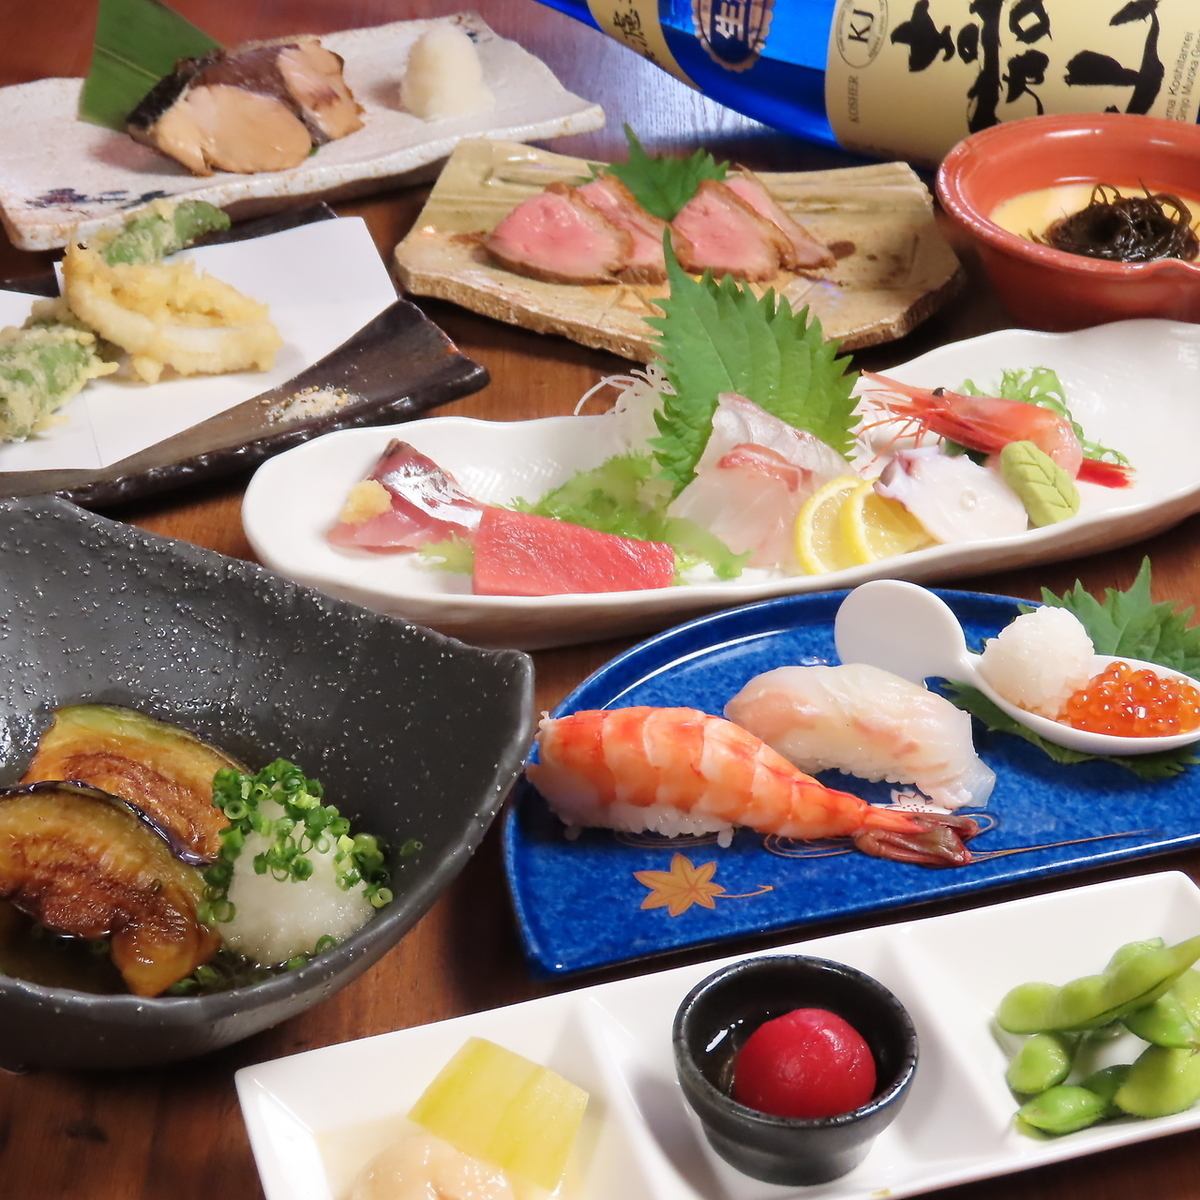 可以同时享用正宗握寿司、新泻特产、鲜鱼的人气餐厅